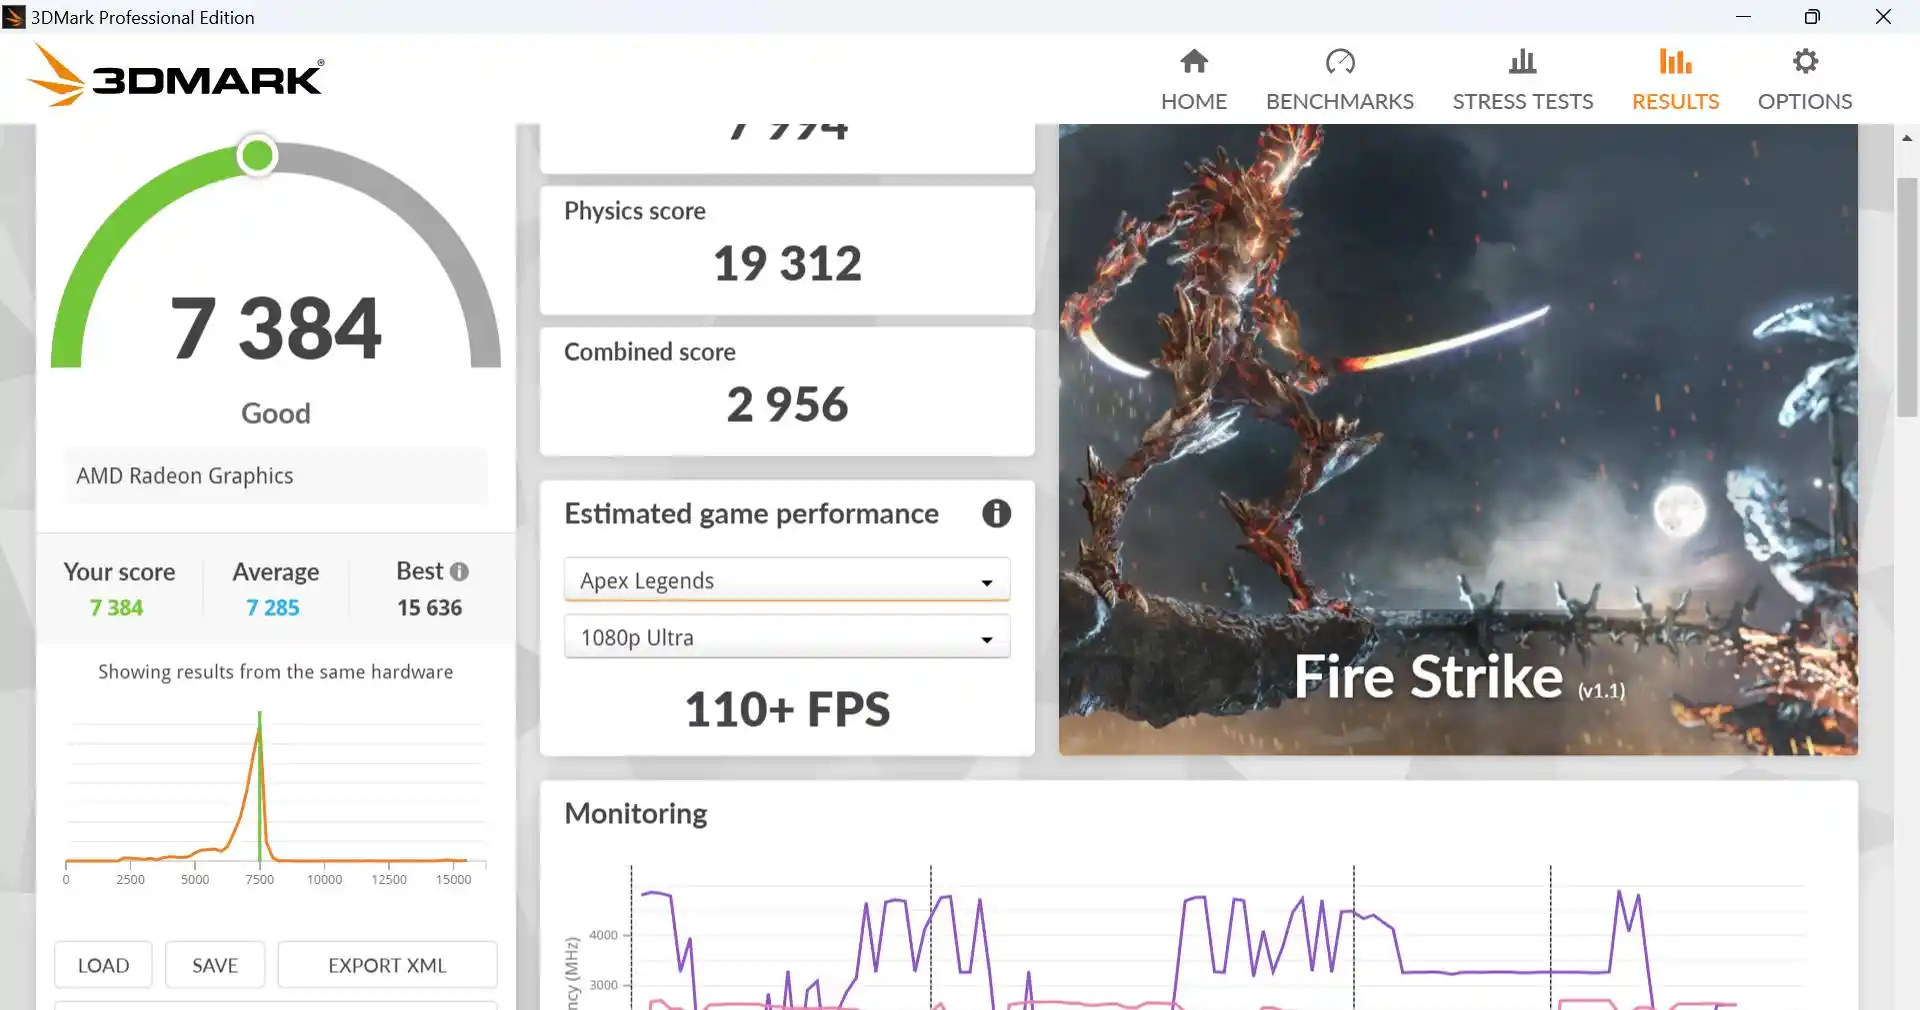 ASUS ROG Ally recensione - dopo 8 mesi è ancora il king delle console portatili PC? Benchmark 3DMark Fire Strike